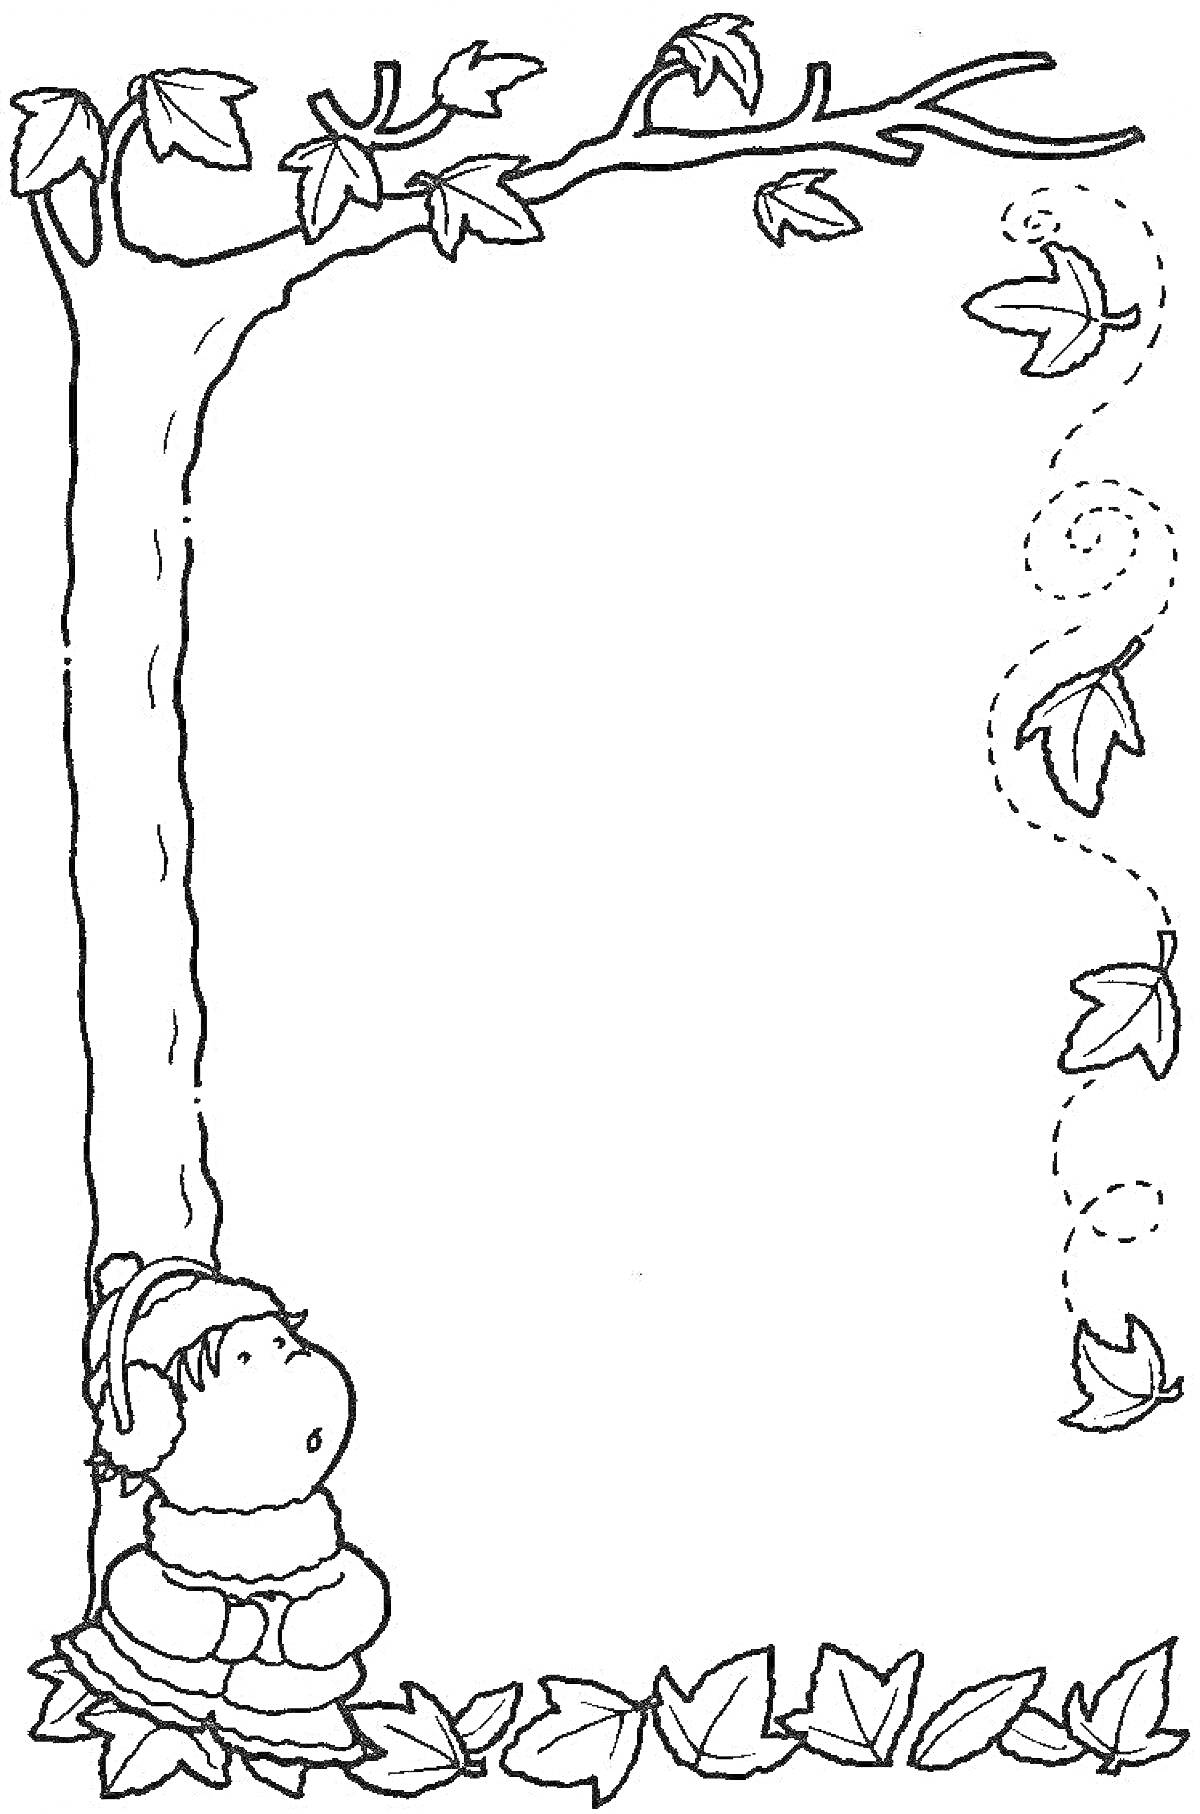 Раскраска Рамка с мальчиком под деревом с опадающими листьями